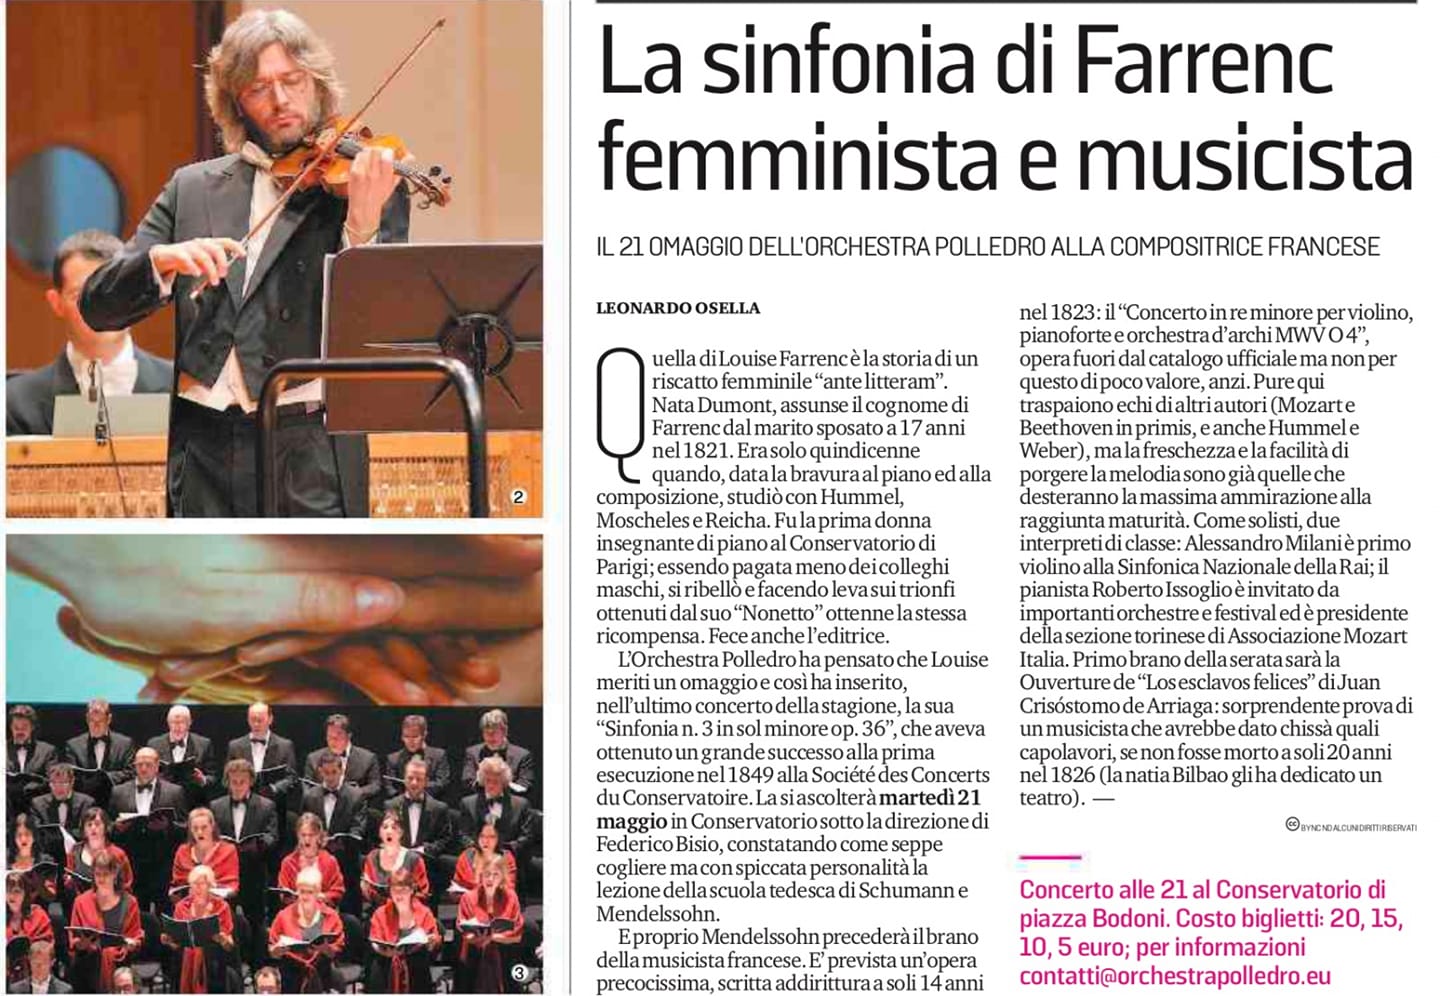 La sinfonia di Farrenc, femminista e musicista